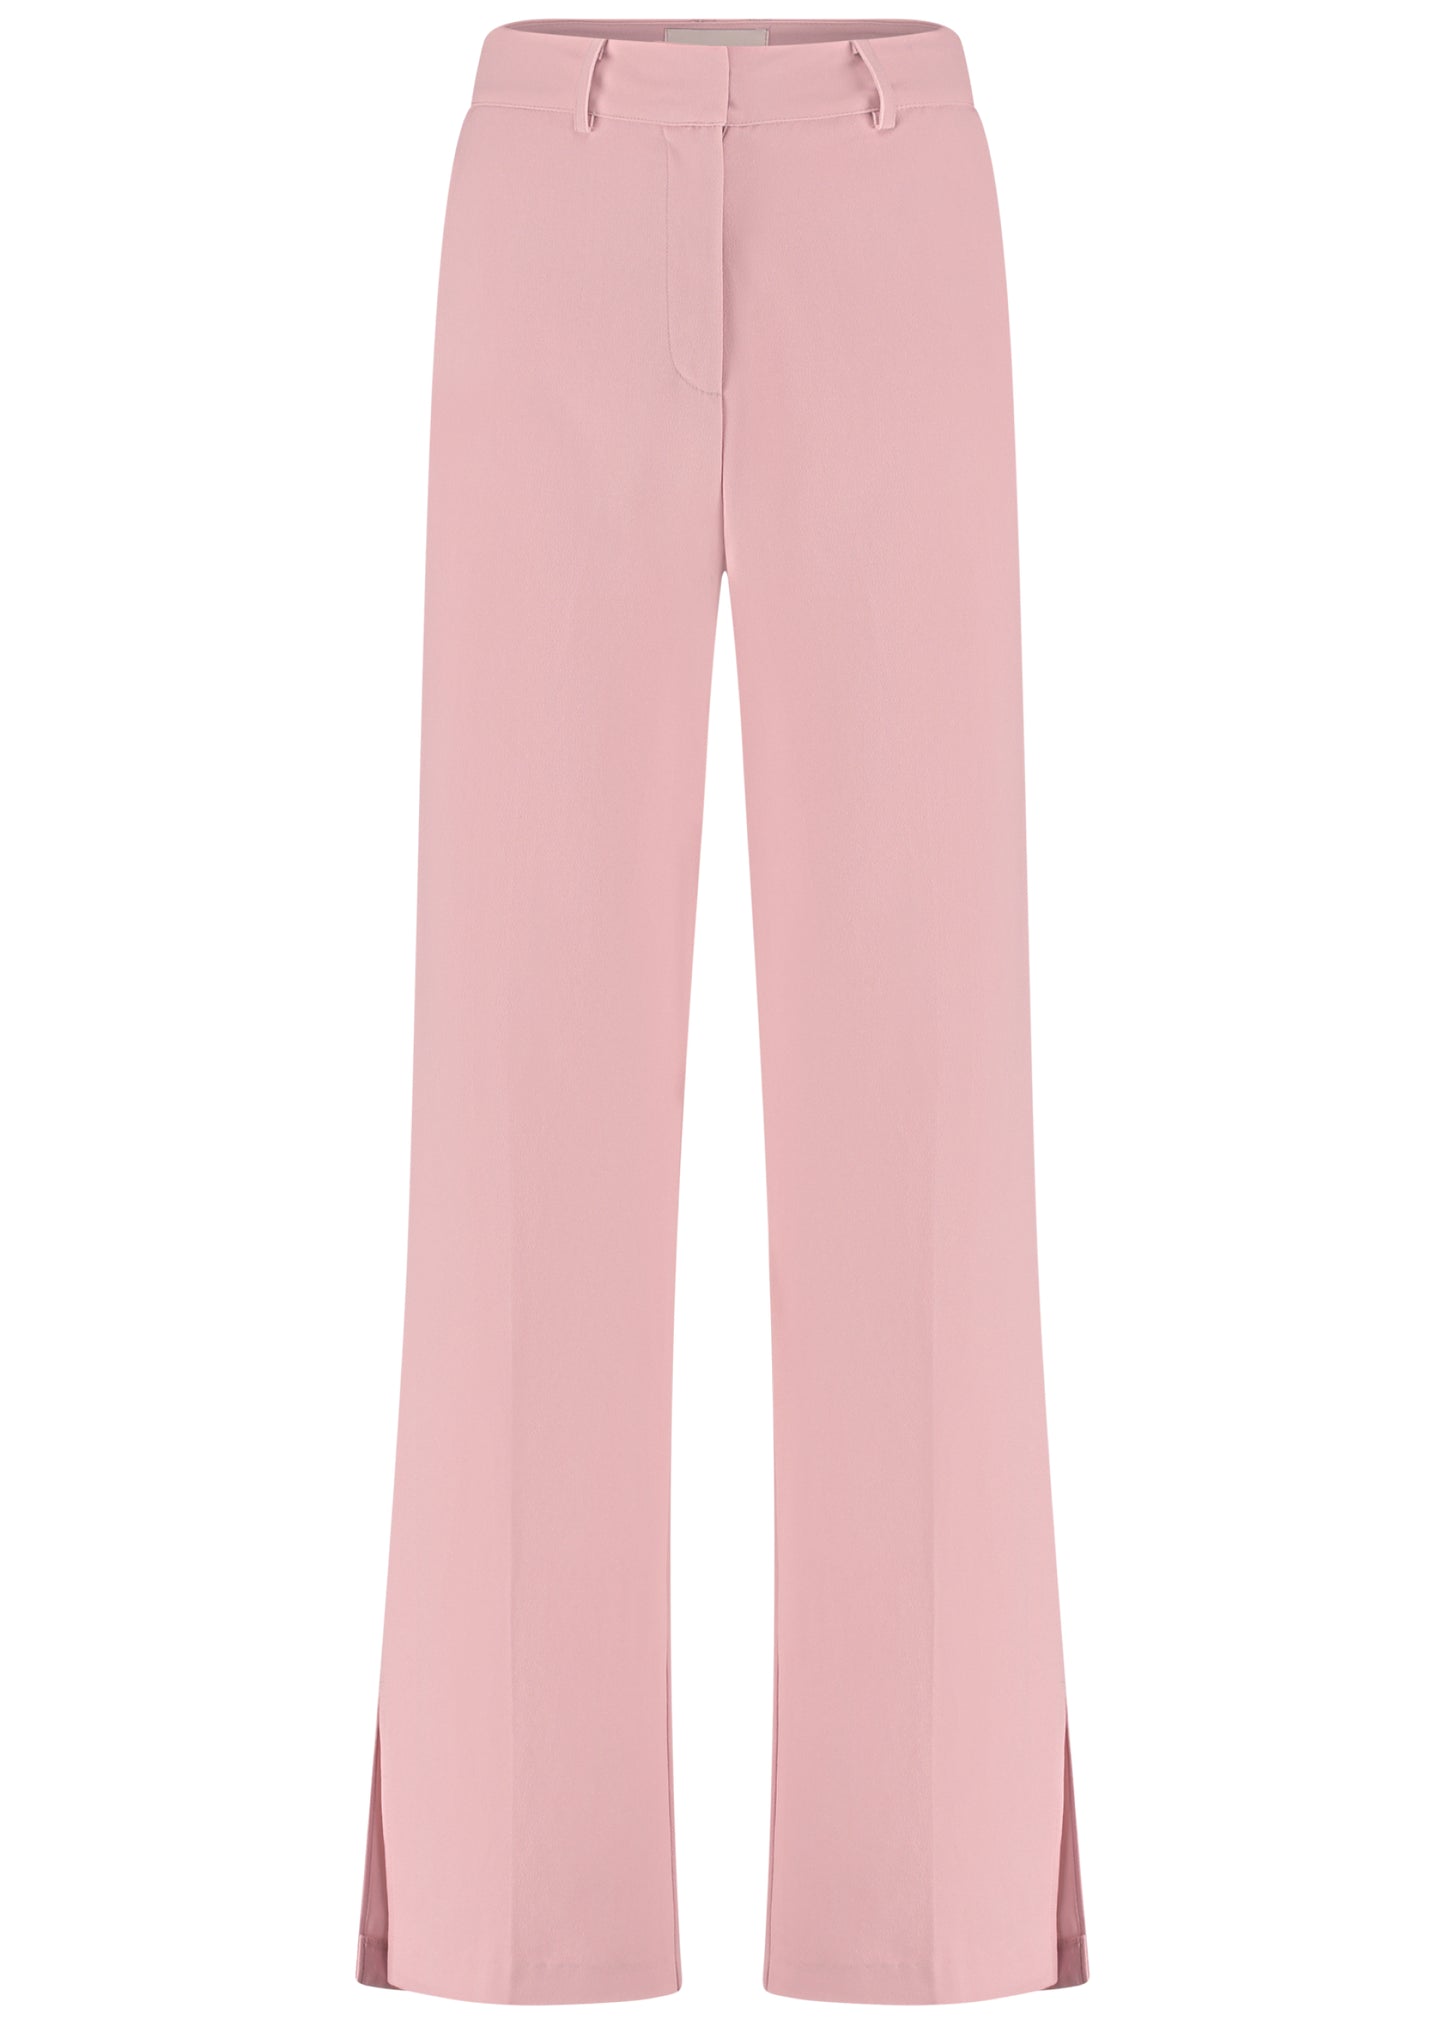 Lolani Pants Soft pink